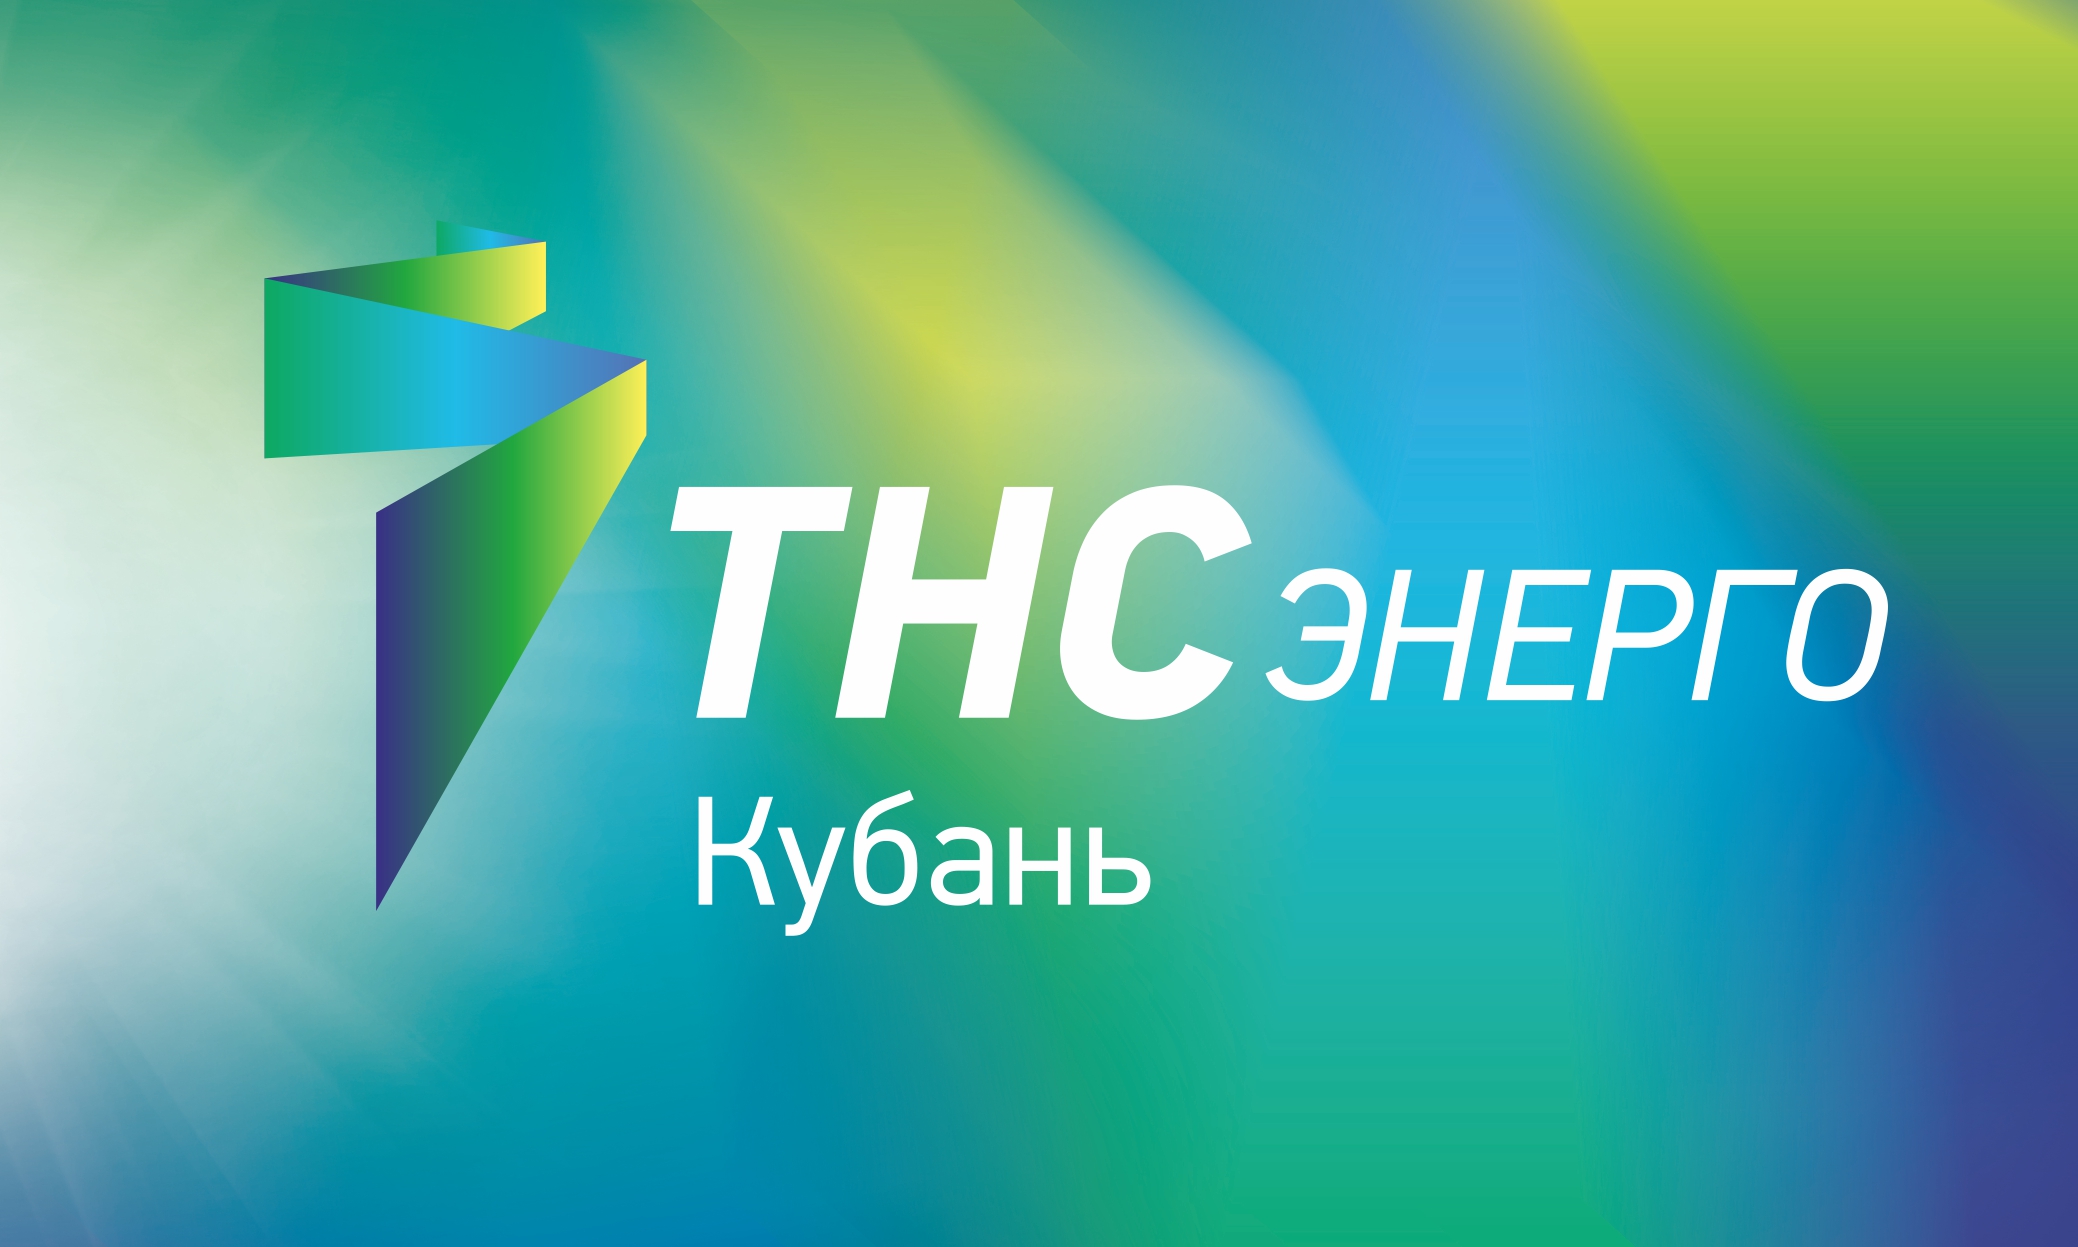 «ТНС энерго Кубань» провело рейды по проверке электросчетчиков в садовых товариществах Краснодара